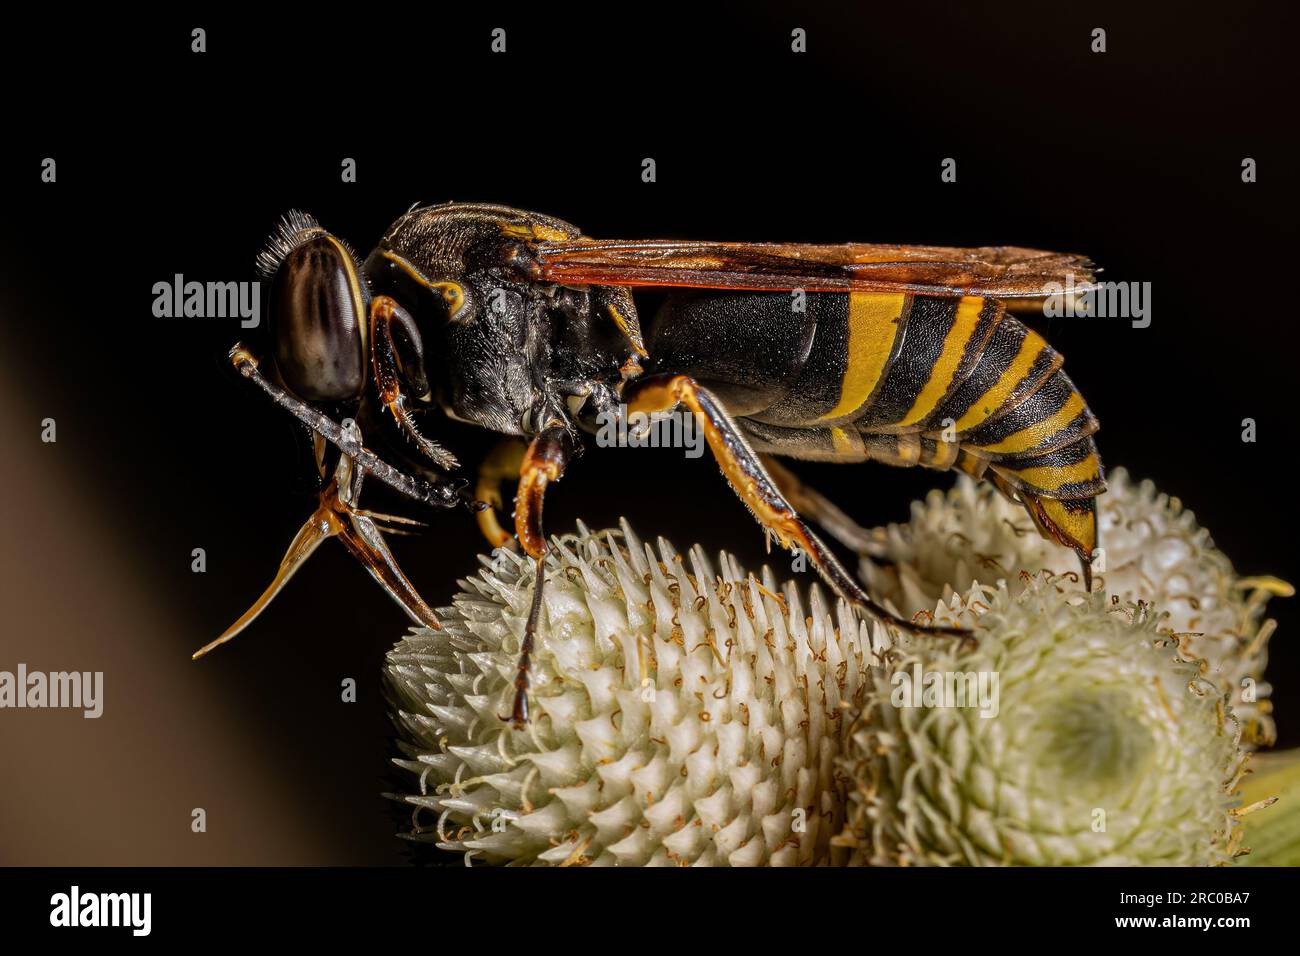 Insetto vespa adulto dell'ordine degli imenotteri Foto Stock